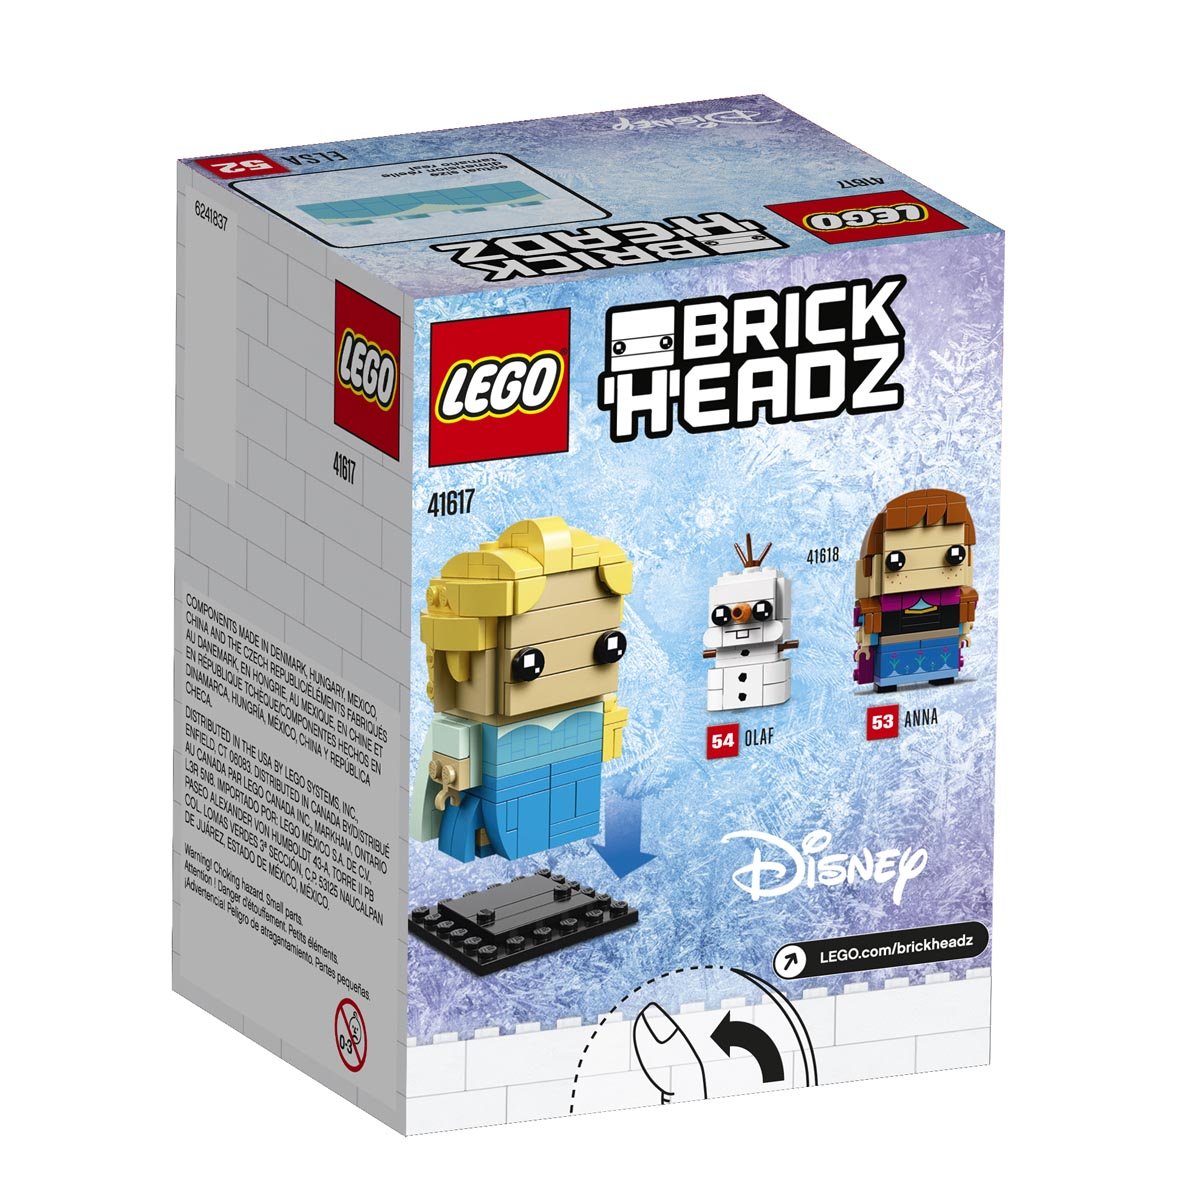 Brickheadz Elsa Lego